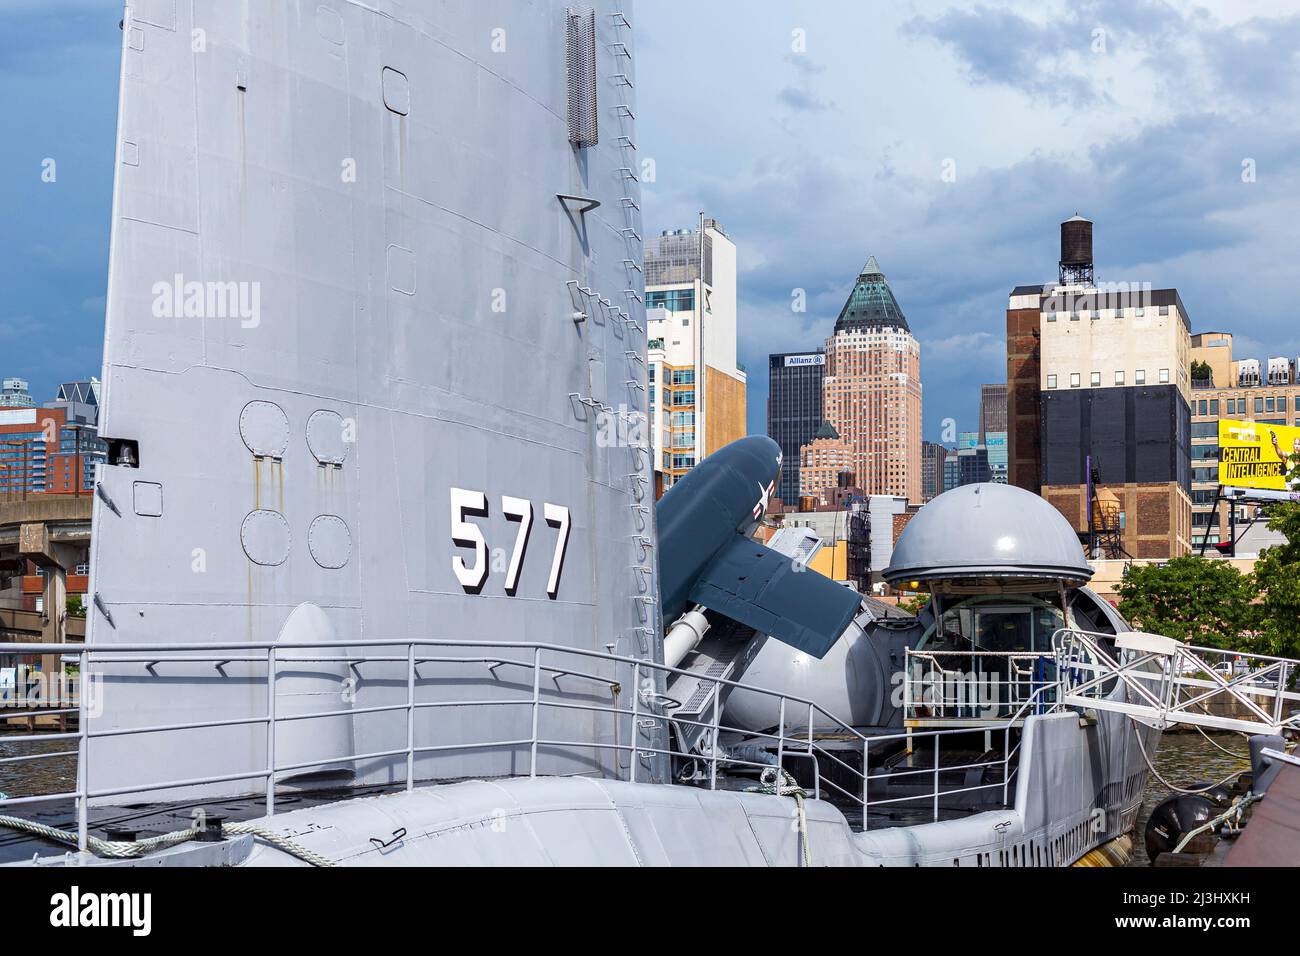 12 AV/W 46 ST, New York City, NY, USA, missile de croisière sous-marin USS Growler à côté du musée Intrepid Sea, Air & Space - un musée d'histoire militaire et maritime américain présente le porte-avions USS Intrepid. Banque D'Images